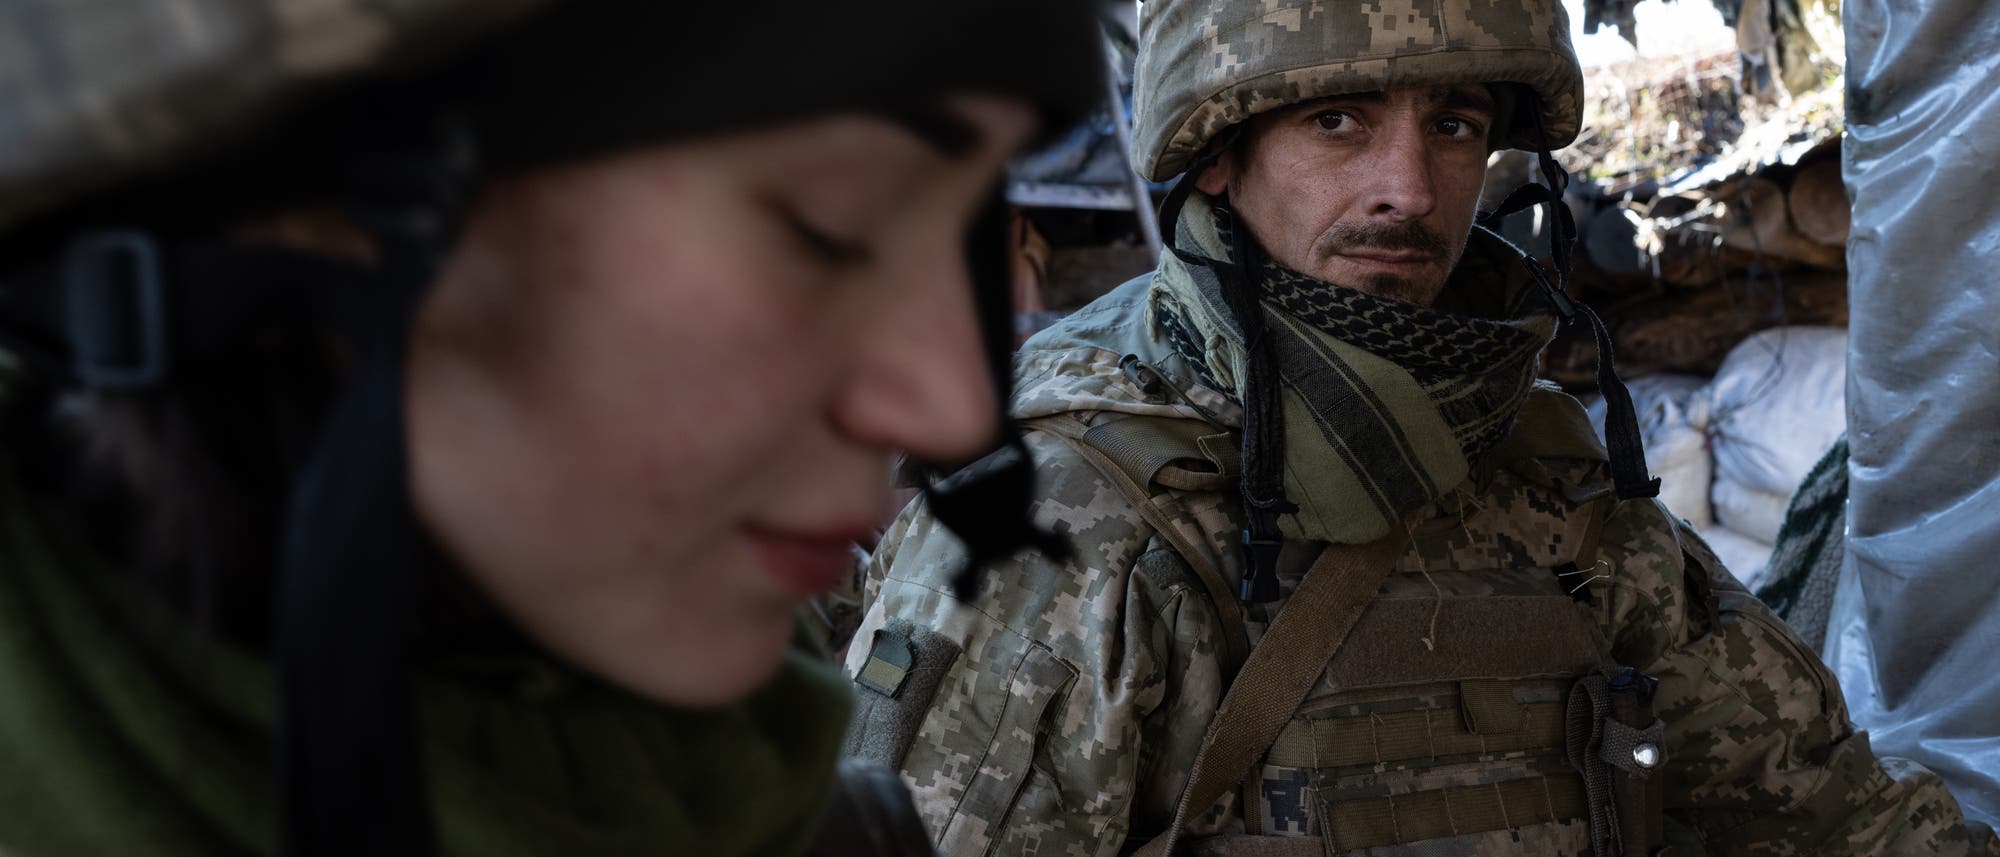 Ukrainische Soldaten patrouillieren entlang der Frontlinie außerhalb von Switlodarsk während des schweren Beschusses durch separatistische Kräfte am 19. Februar 2022. 